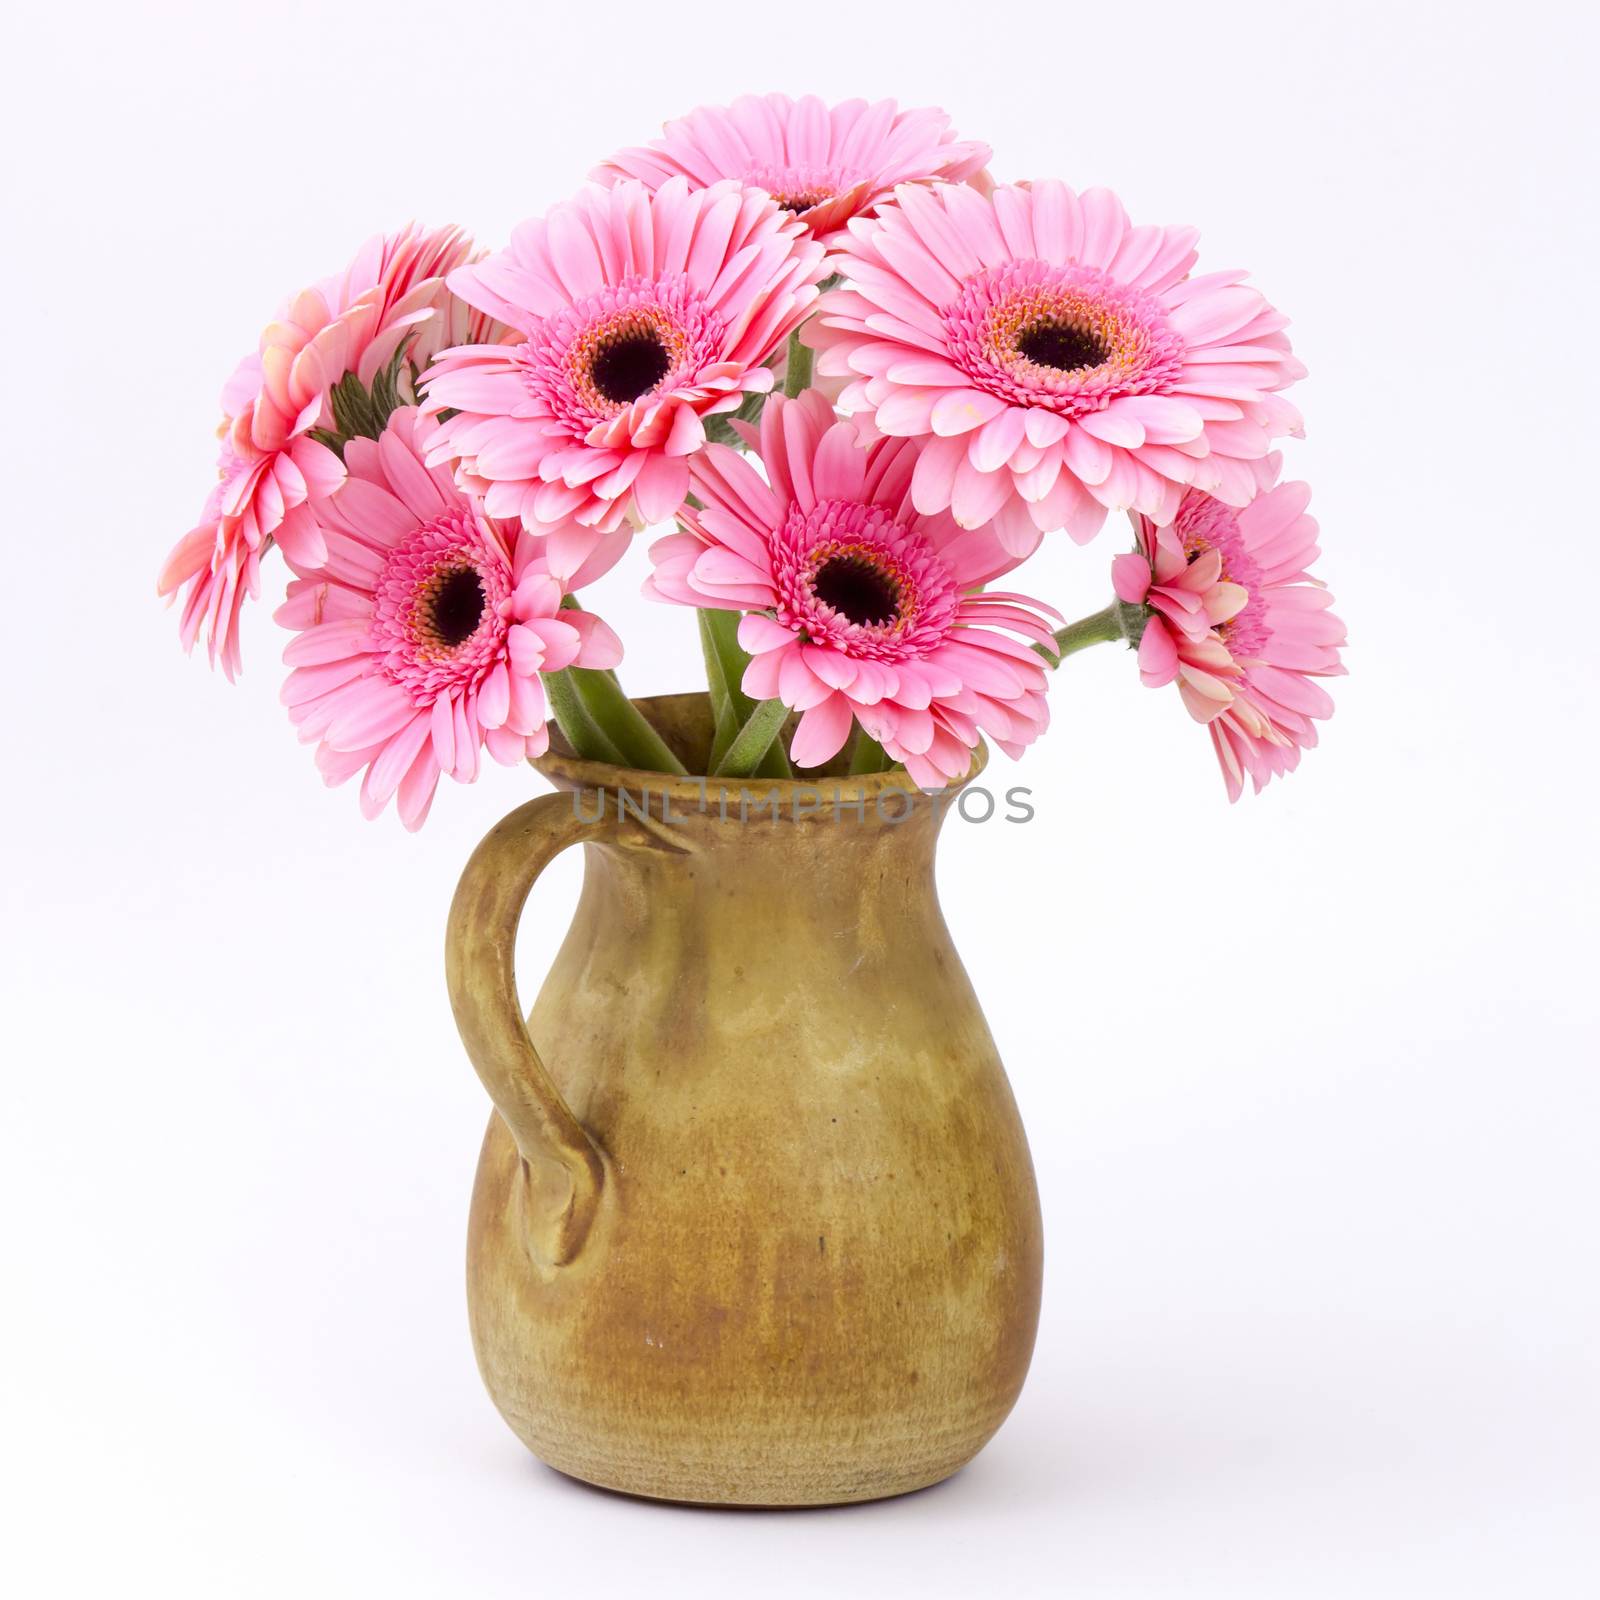 pink gerbera flowers in a vase